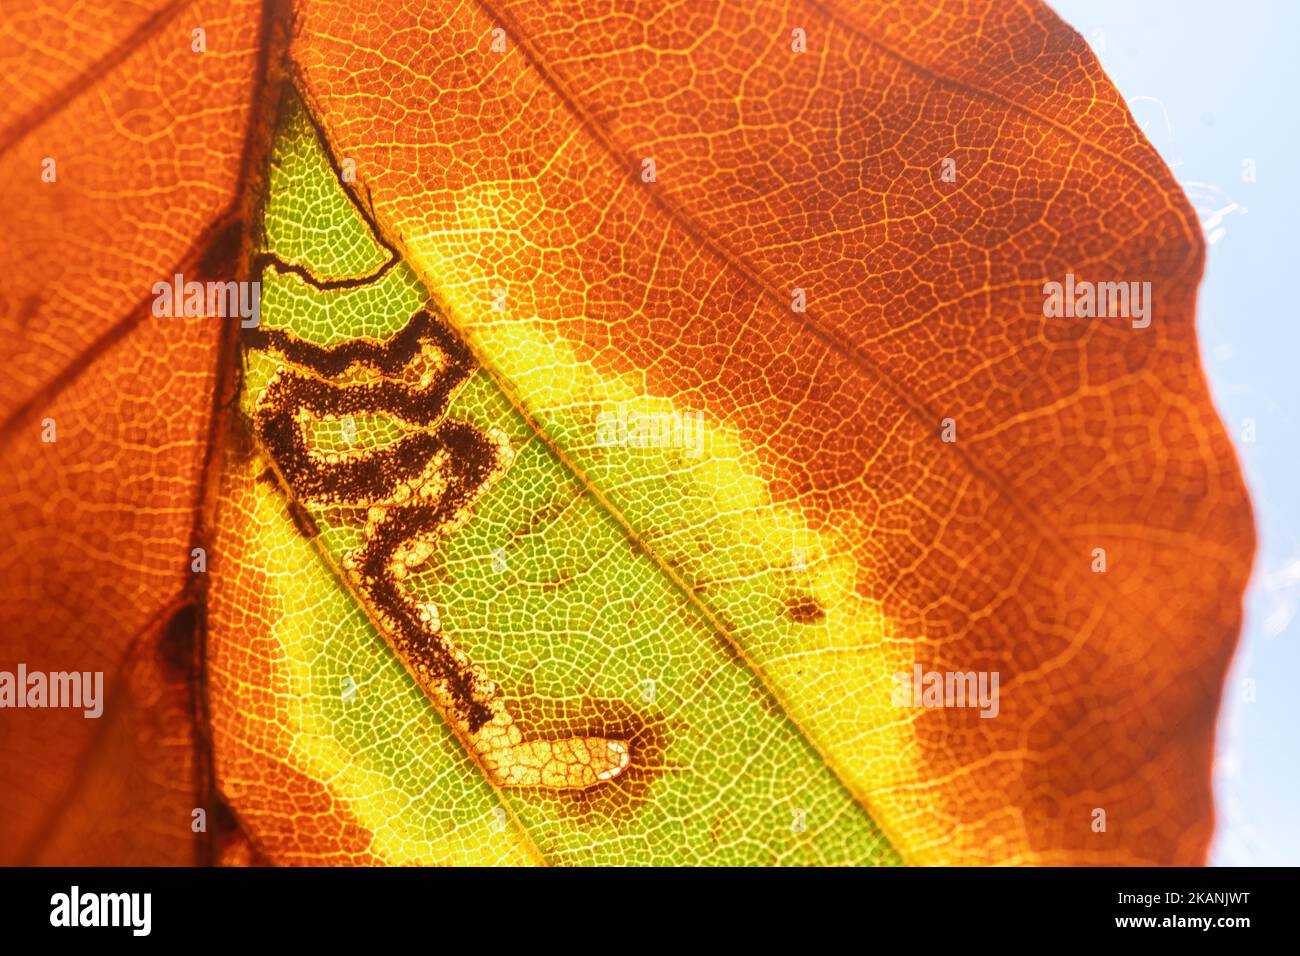 Stigmella tititirella, galerie de mines de feuilles de la teigne de l'extraction des feuilles sur la feuille de hêtre européen (Fagus sylvatica) pendant l'automne, Angleterre, Royaume-Uni Banque D'Images